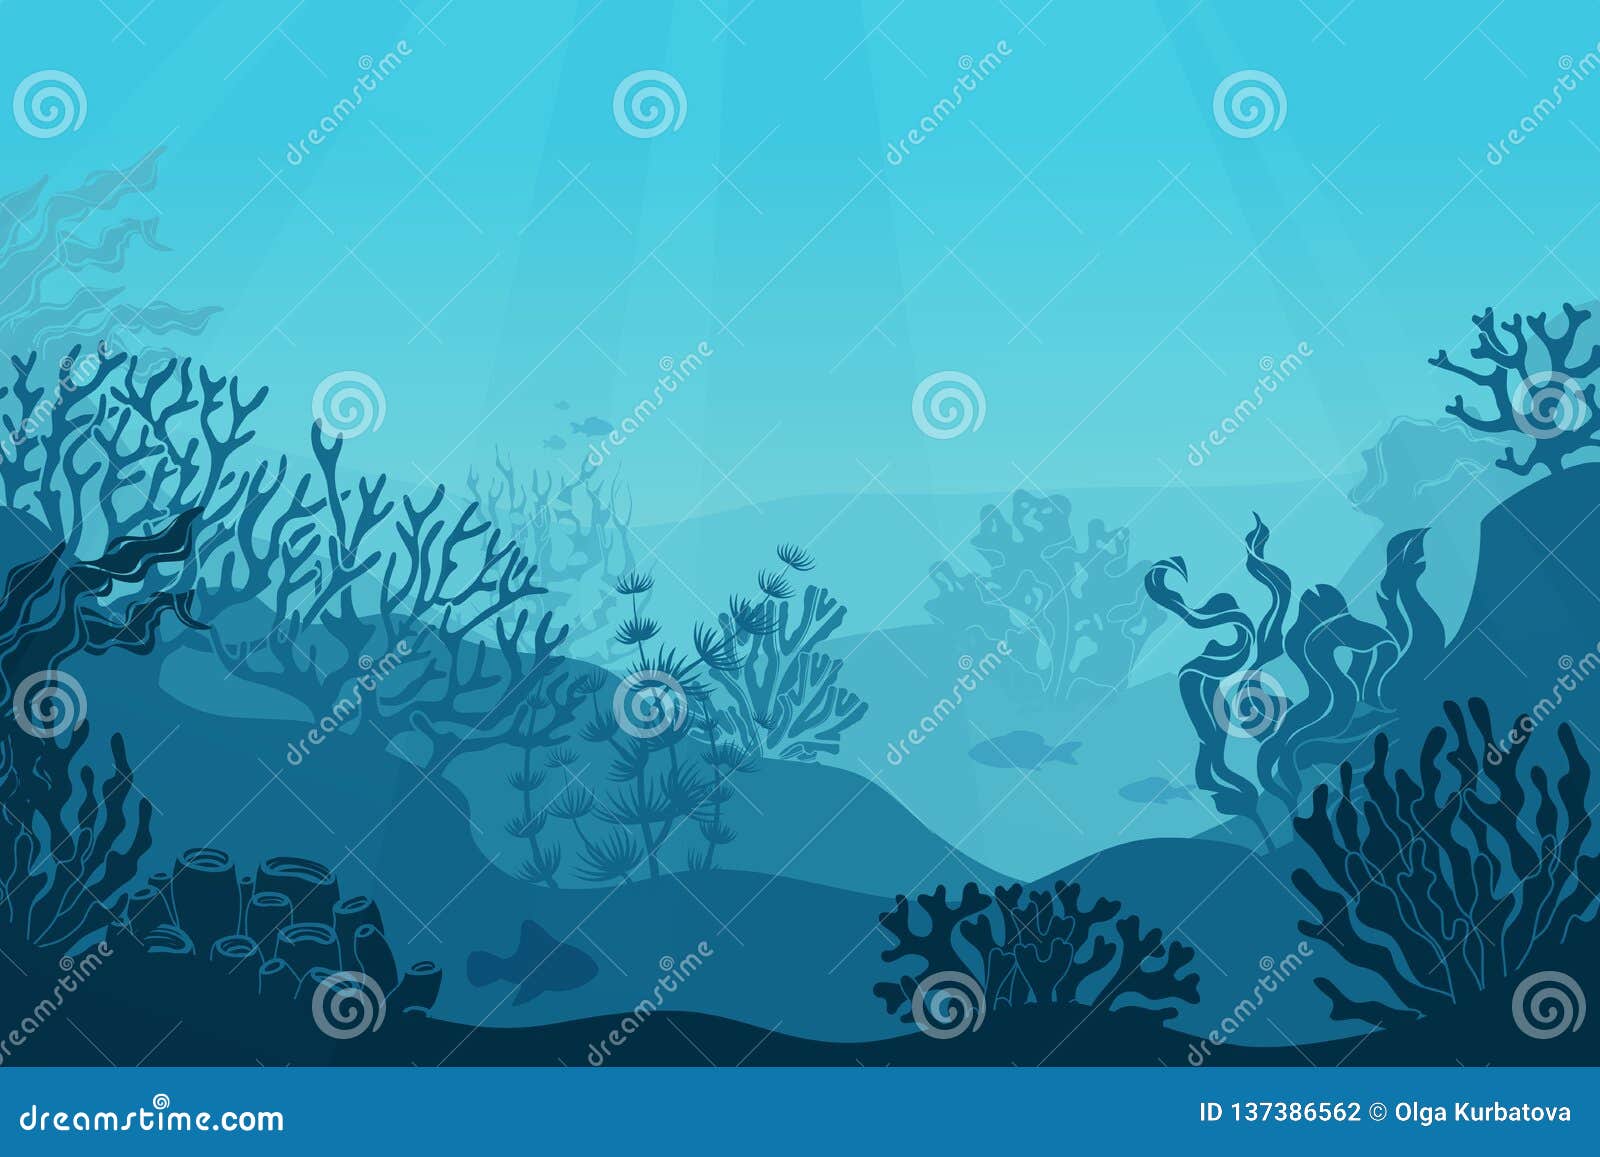 underwater seascape. seafloor, undersea with seaweed. dark saltwater with corals silhouettes. ocean reef bottom